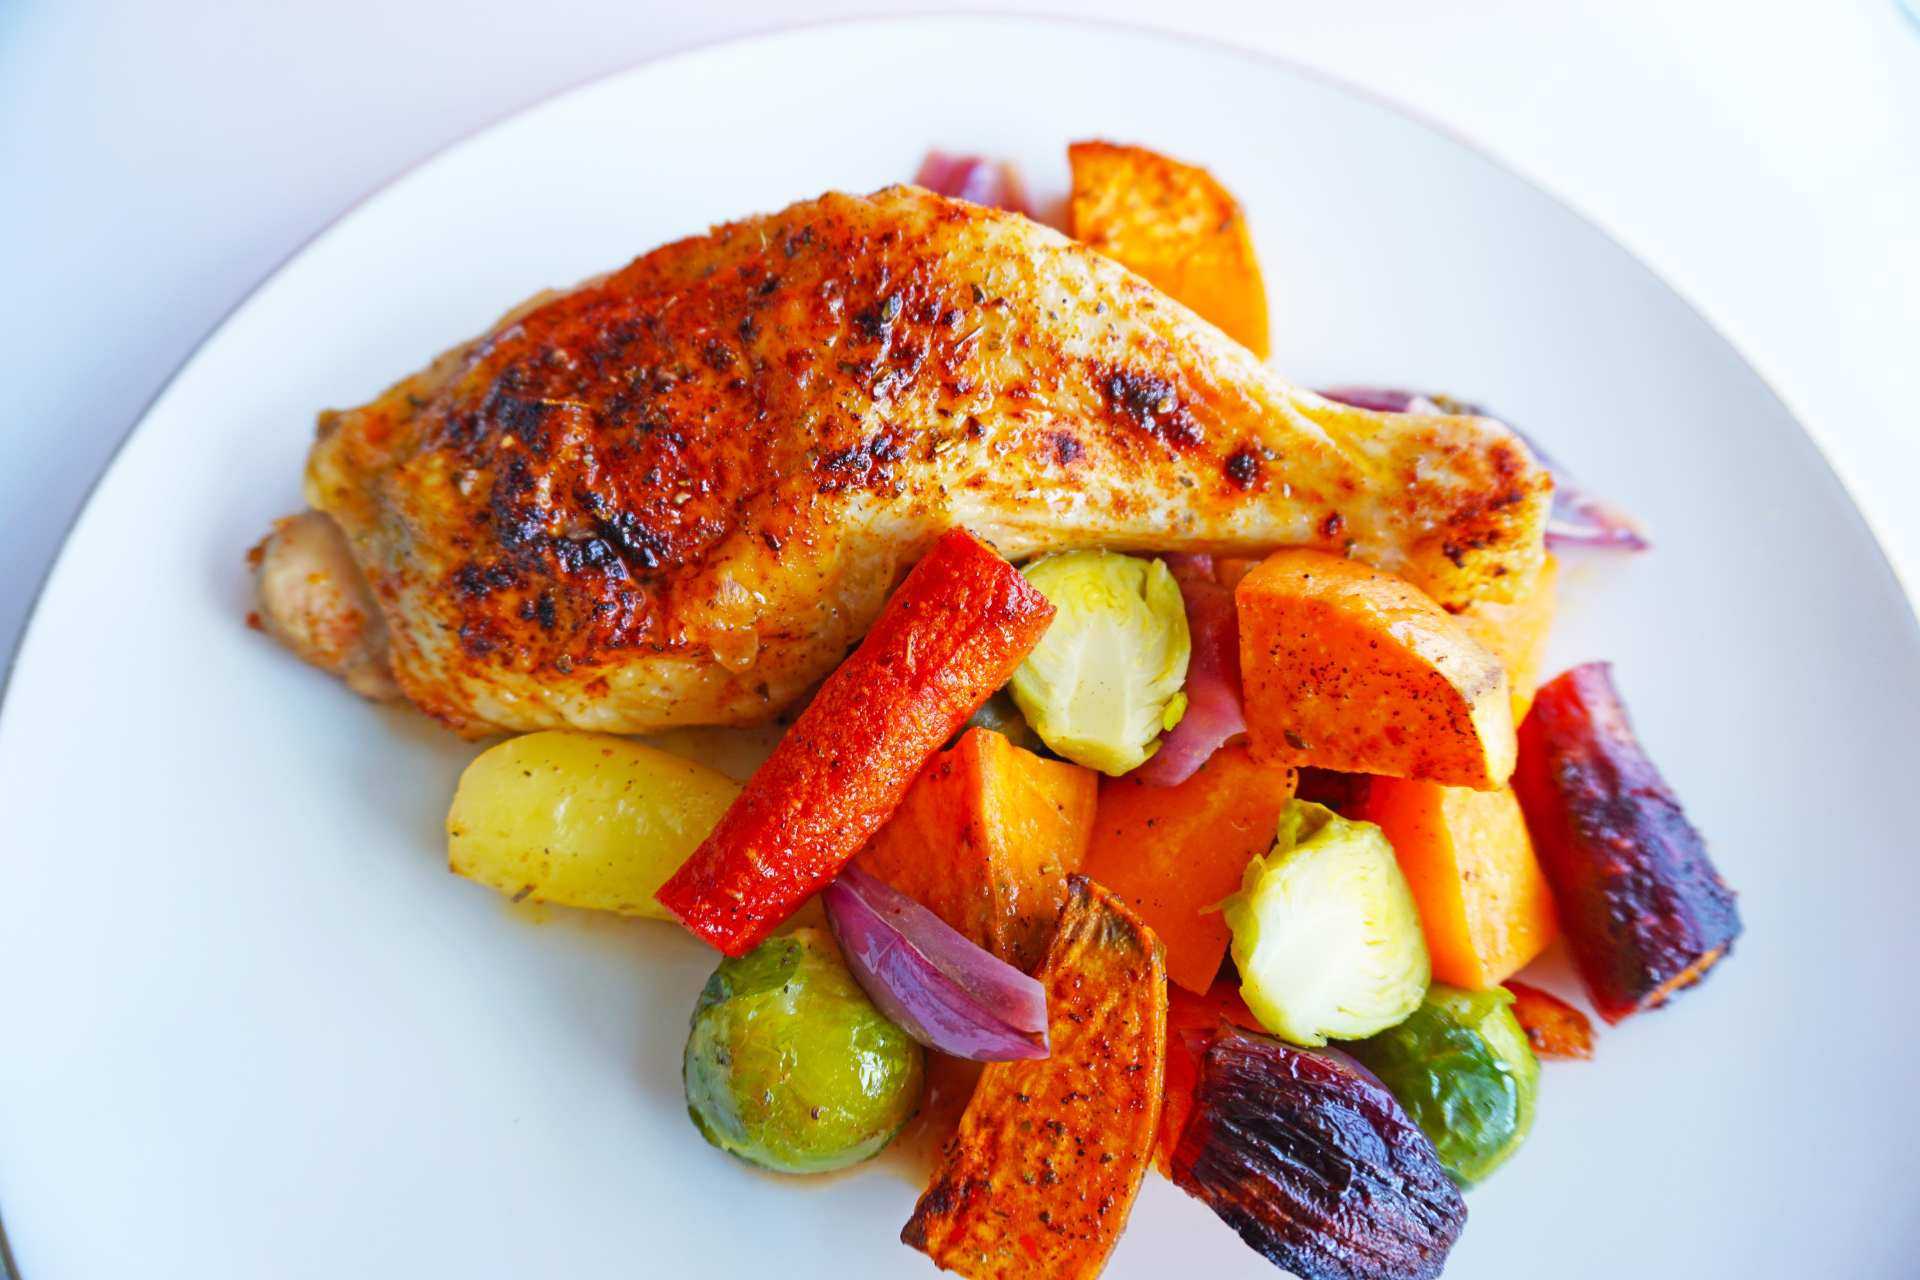 Sunt måltid med grillet kylling, ovnsbakte, rotgrønnsaker smaksatt med lønnesirup, sitron og krydder, eksempel på et råvarebasert måltid.